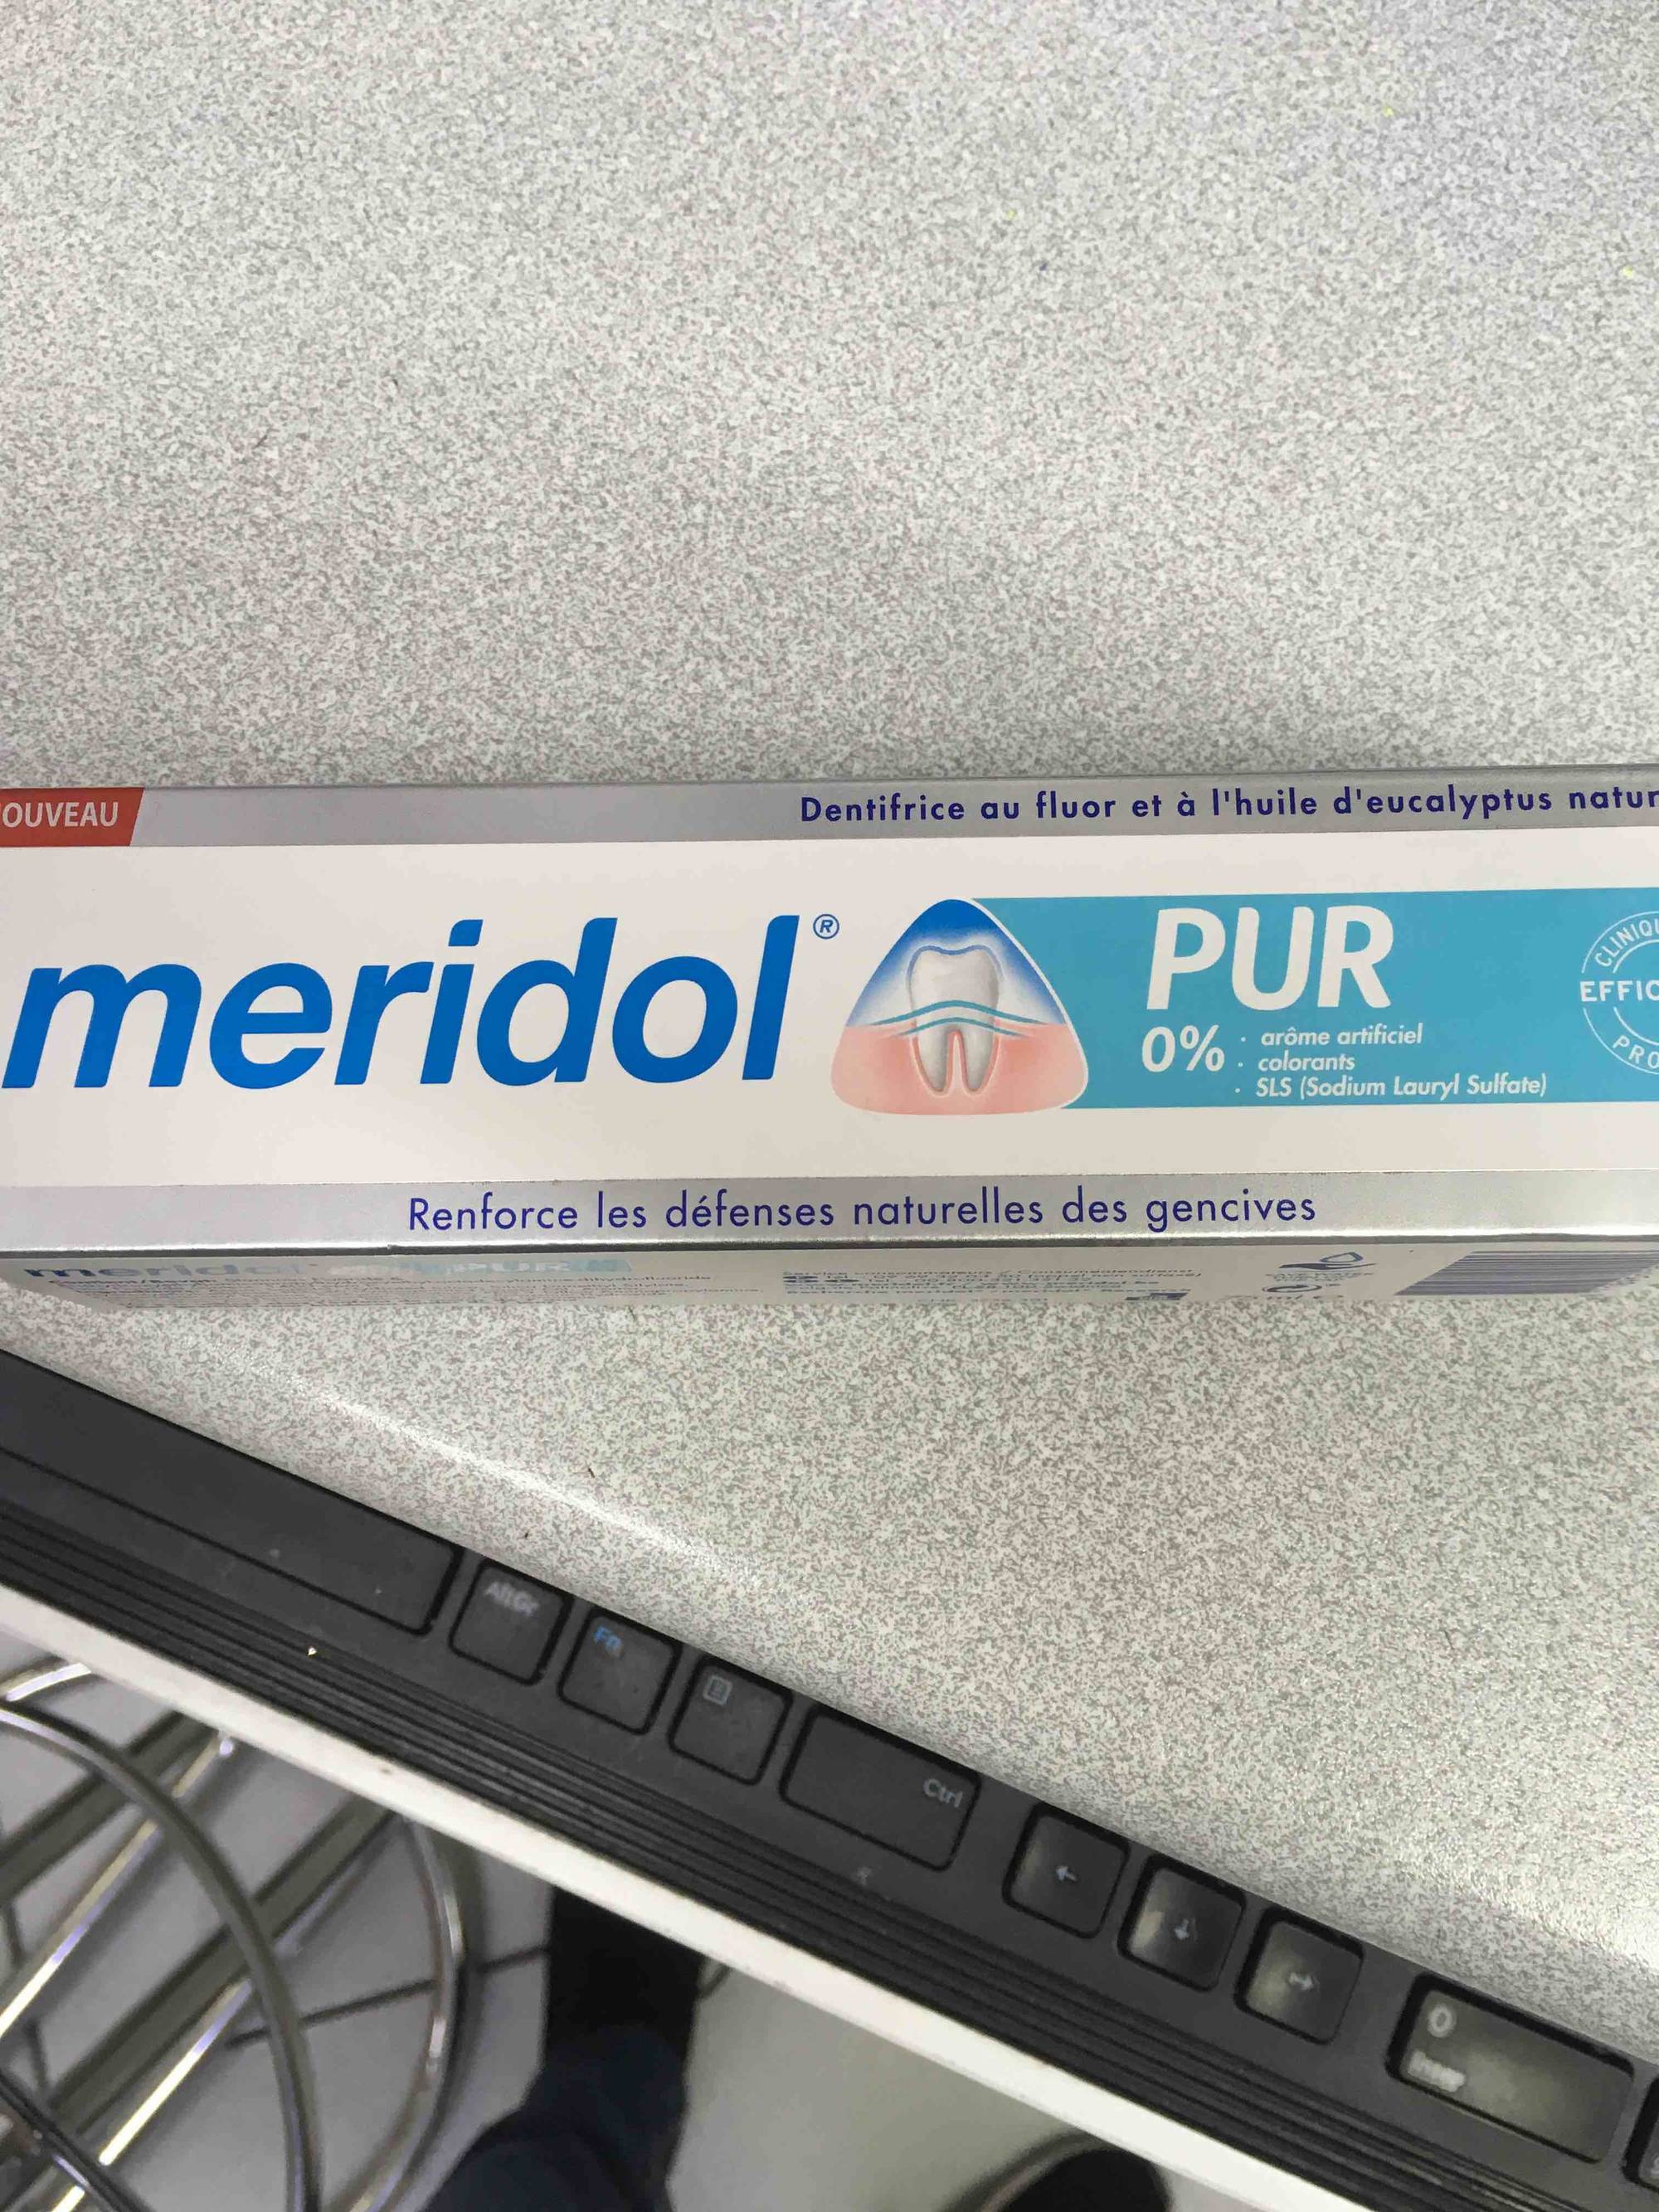 MÉRIDOL - Pur - Dentifrice au fluor et à l'huile d'eucalyptus